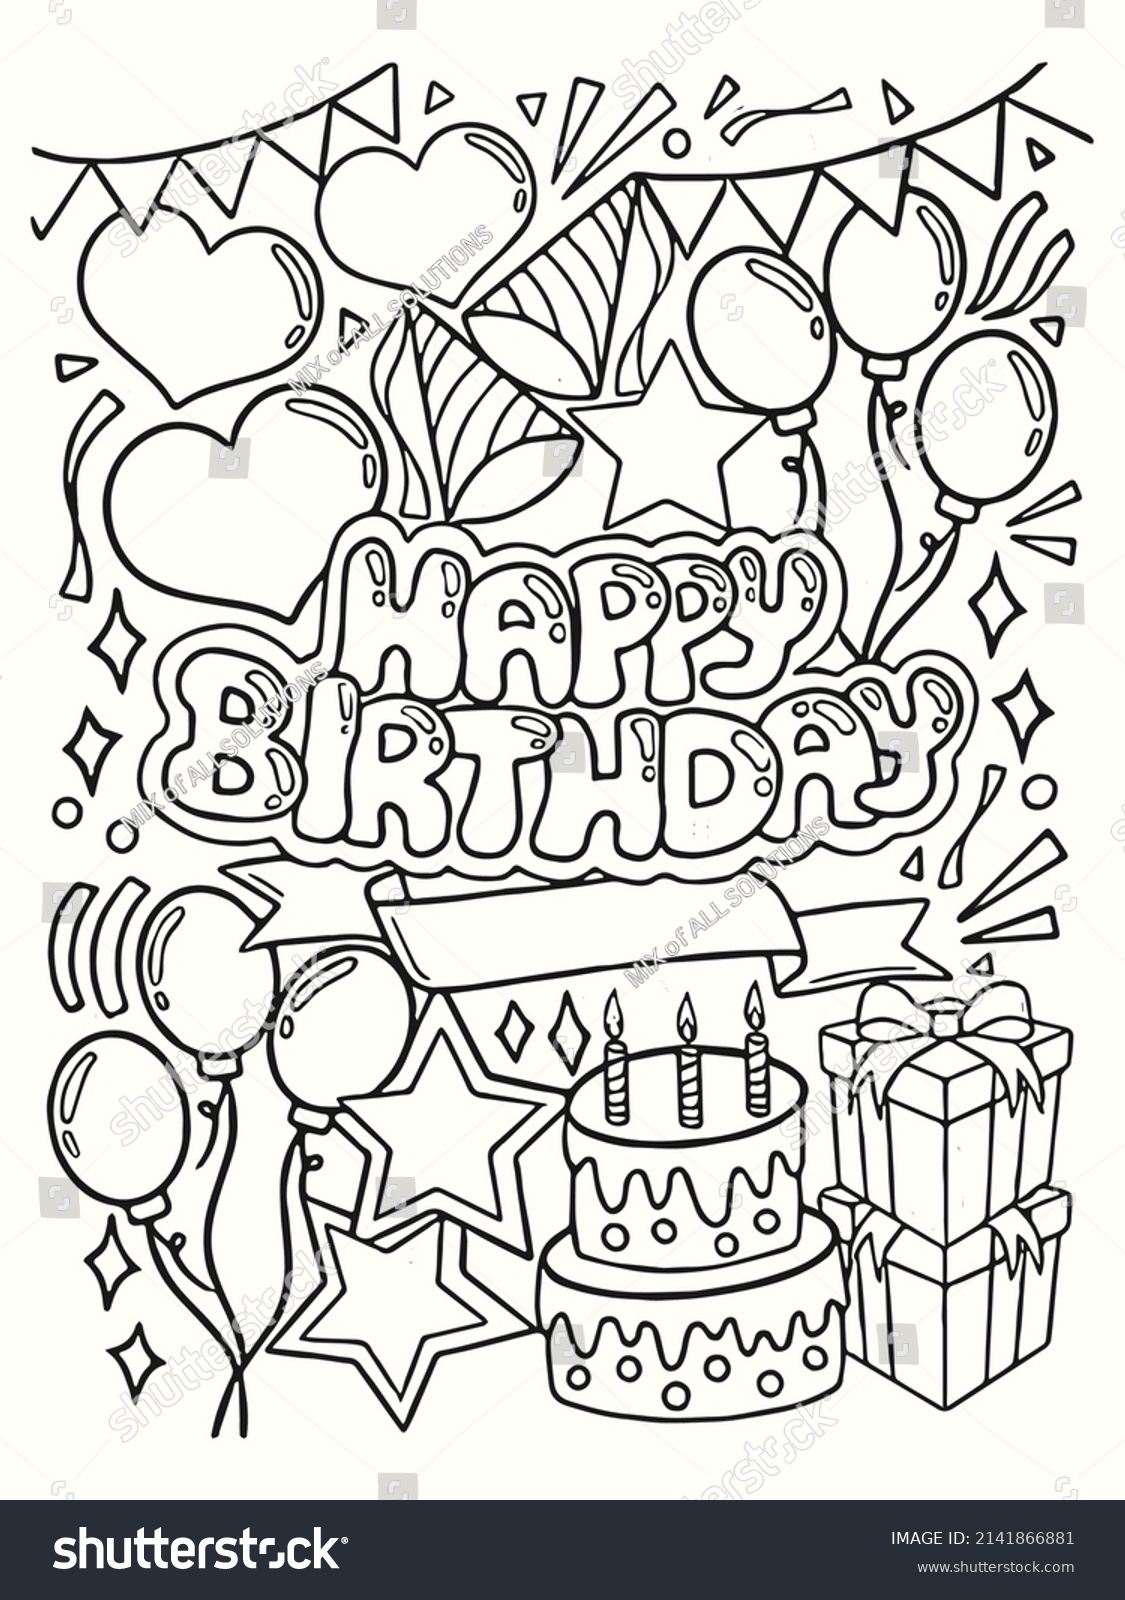 136,862 Happy birthday doodle Images, Stock Photos & Vectors | Shutterstock